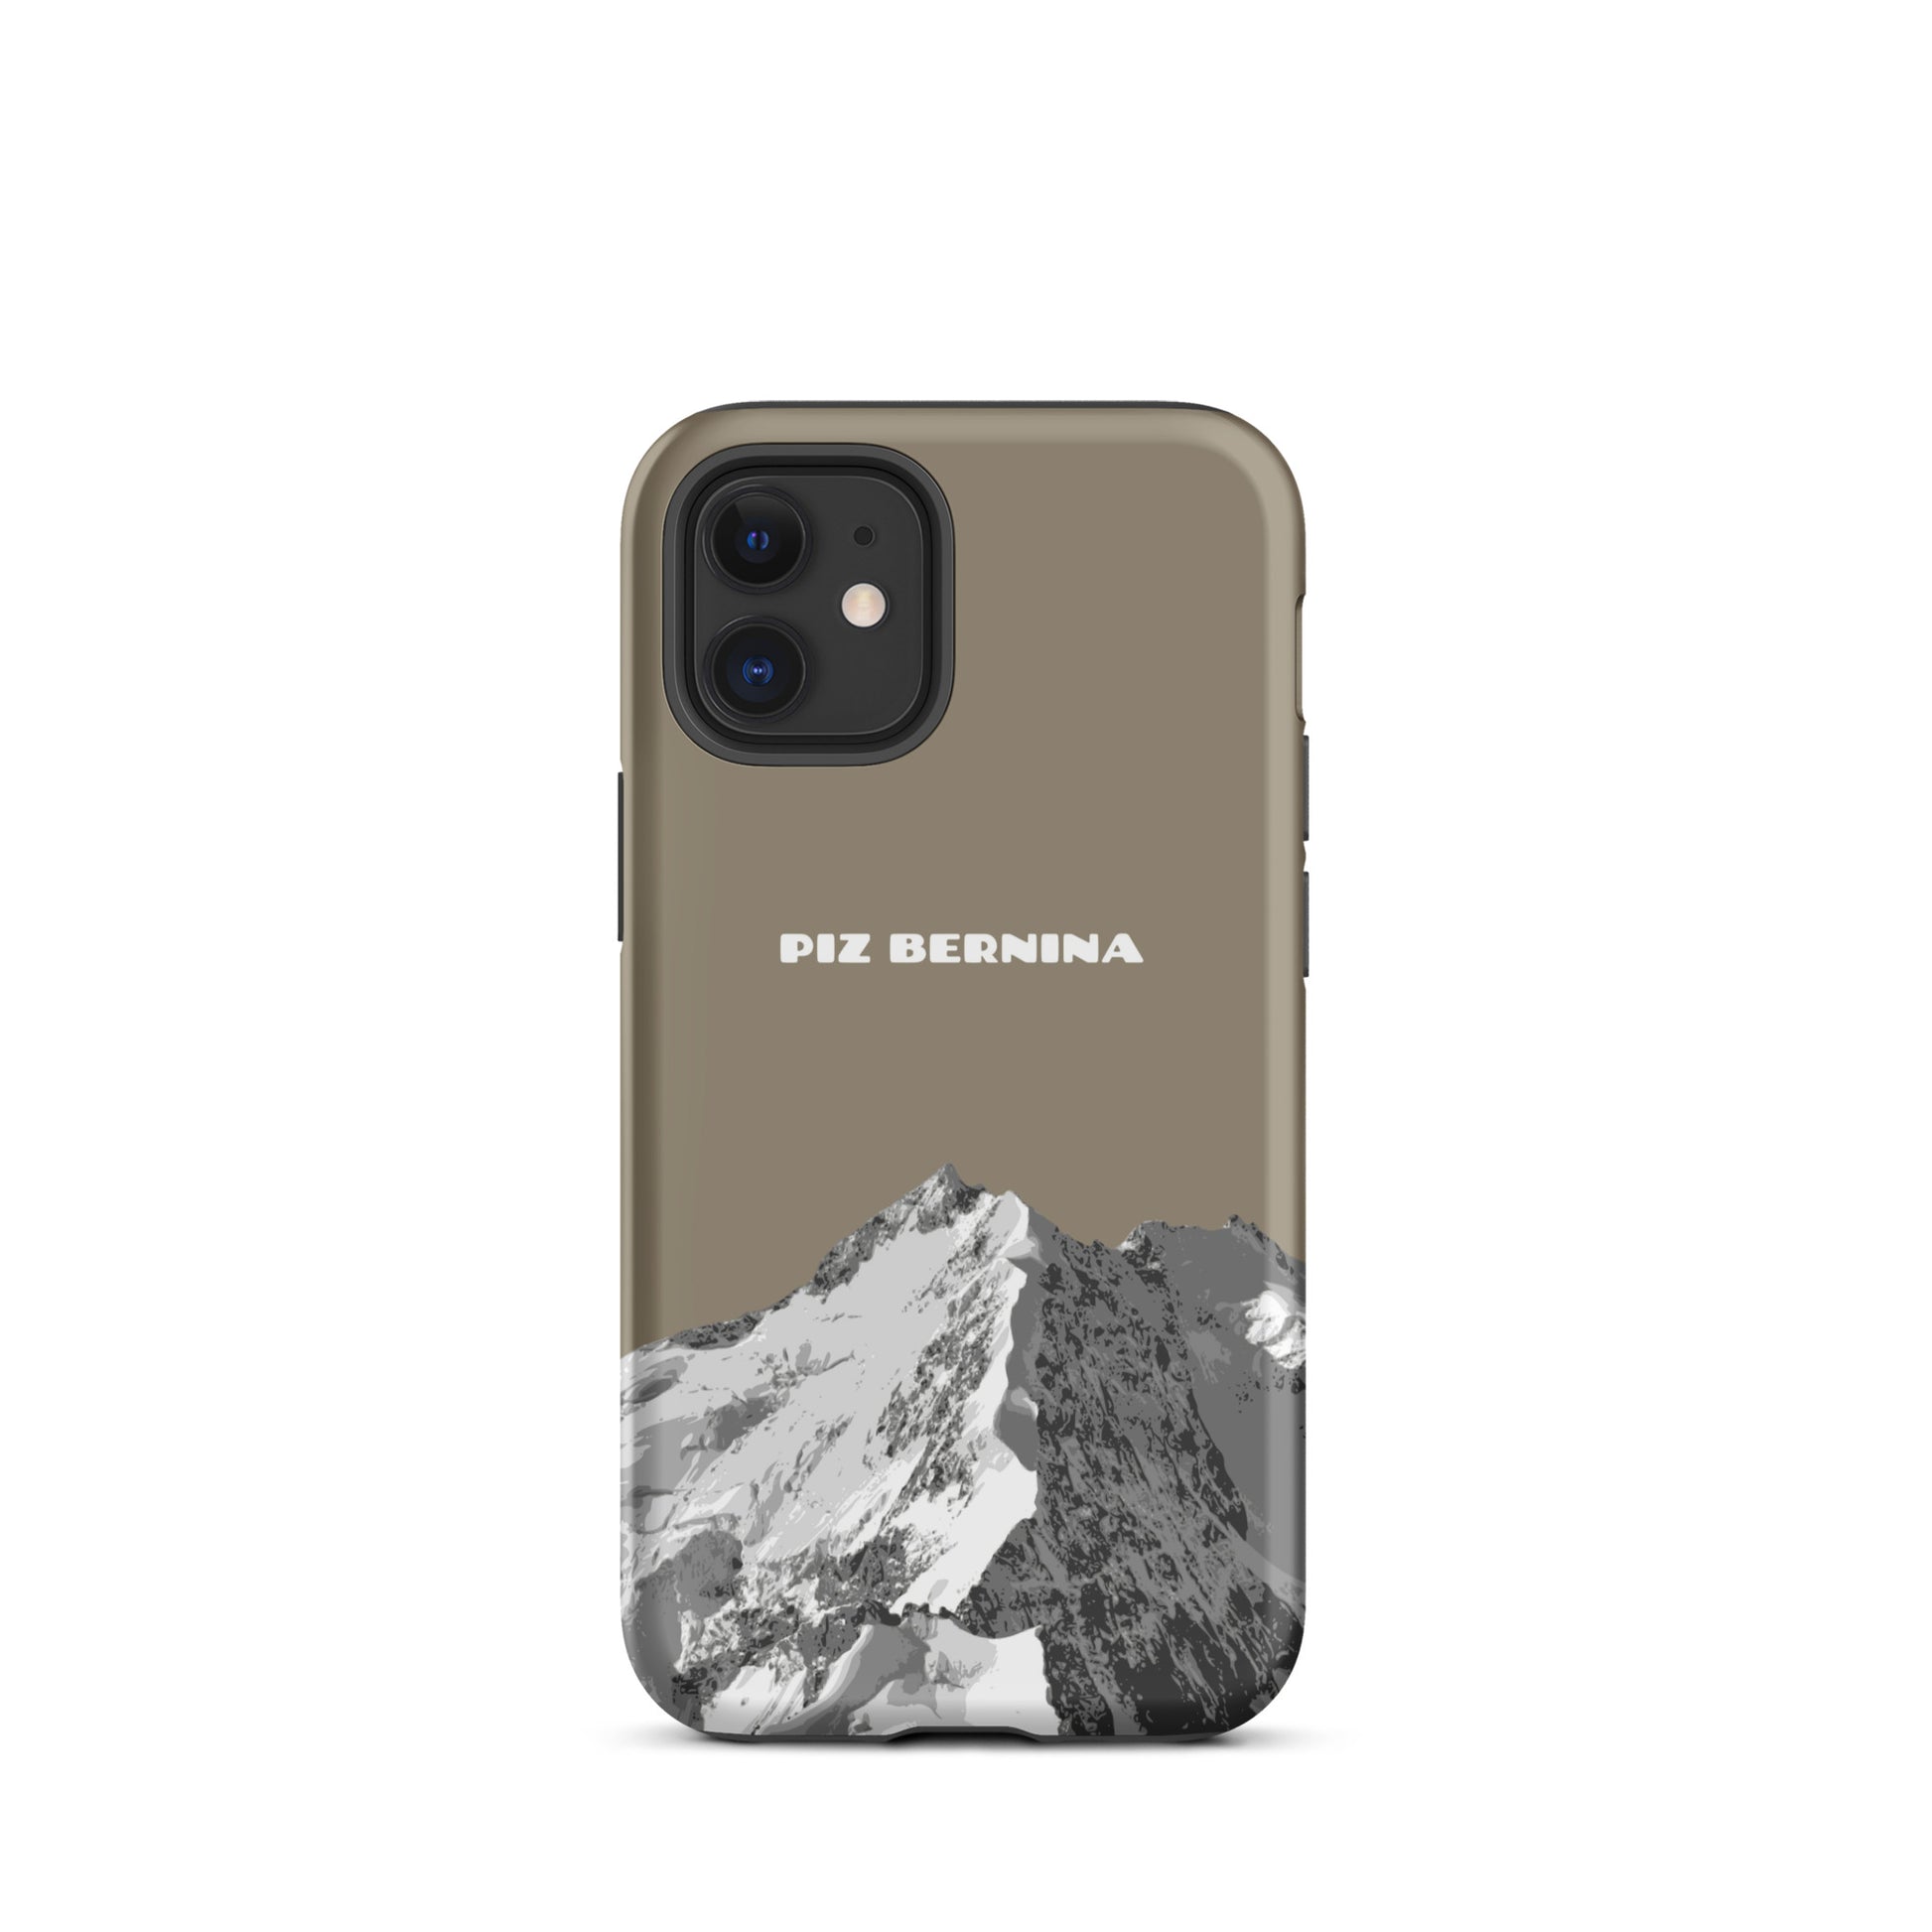 Hülle für das iPhone 12 Mini von Apple in der Farbe Graubraun, dass den Piz Bernina in Graubünden zeigt.